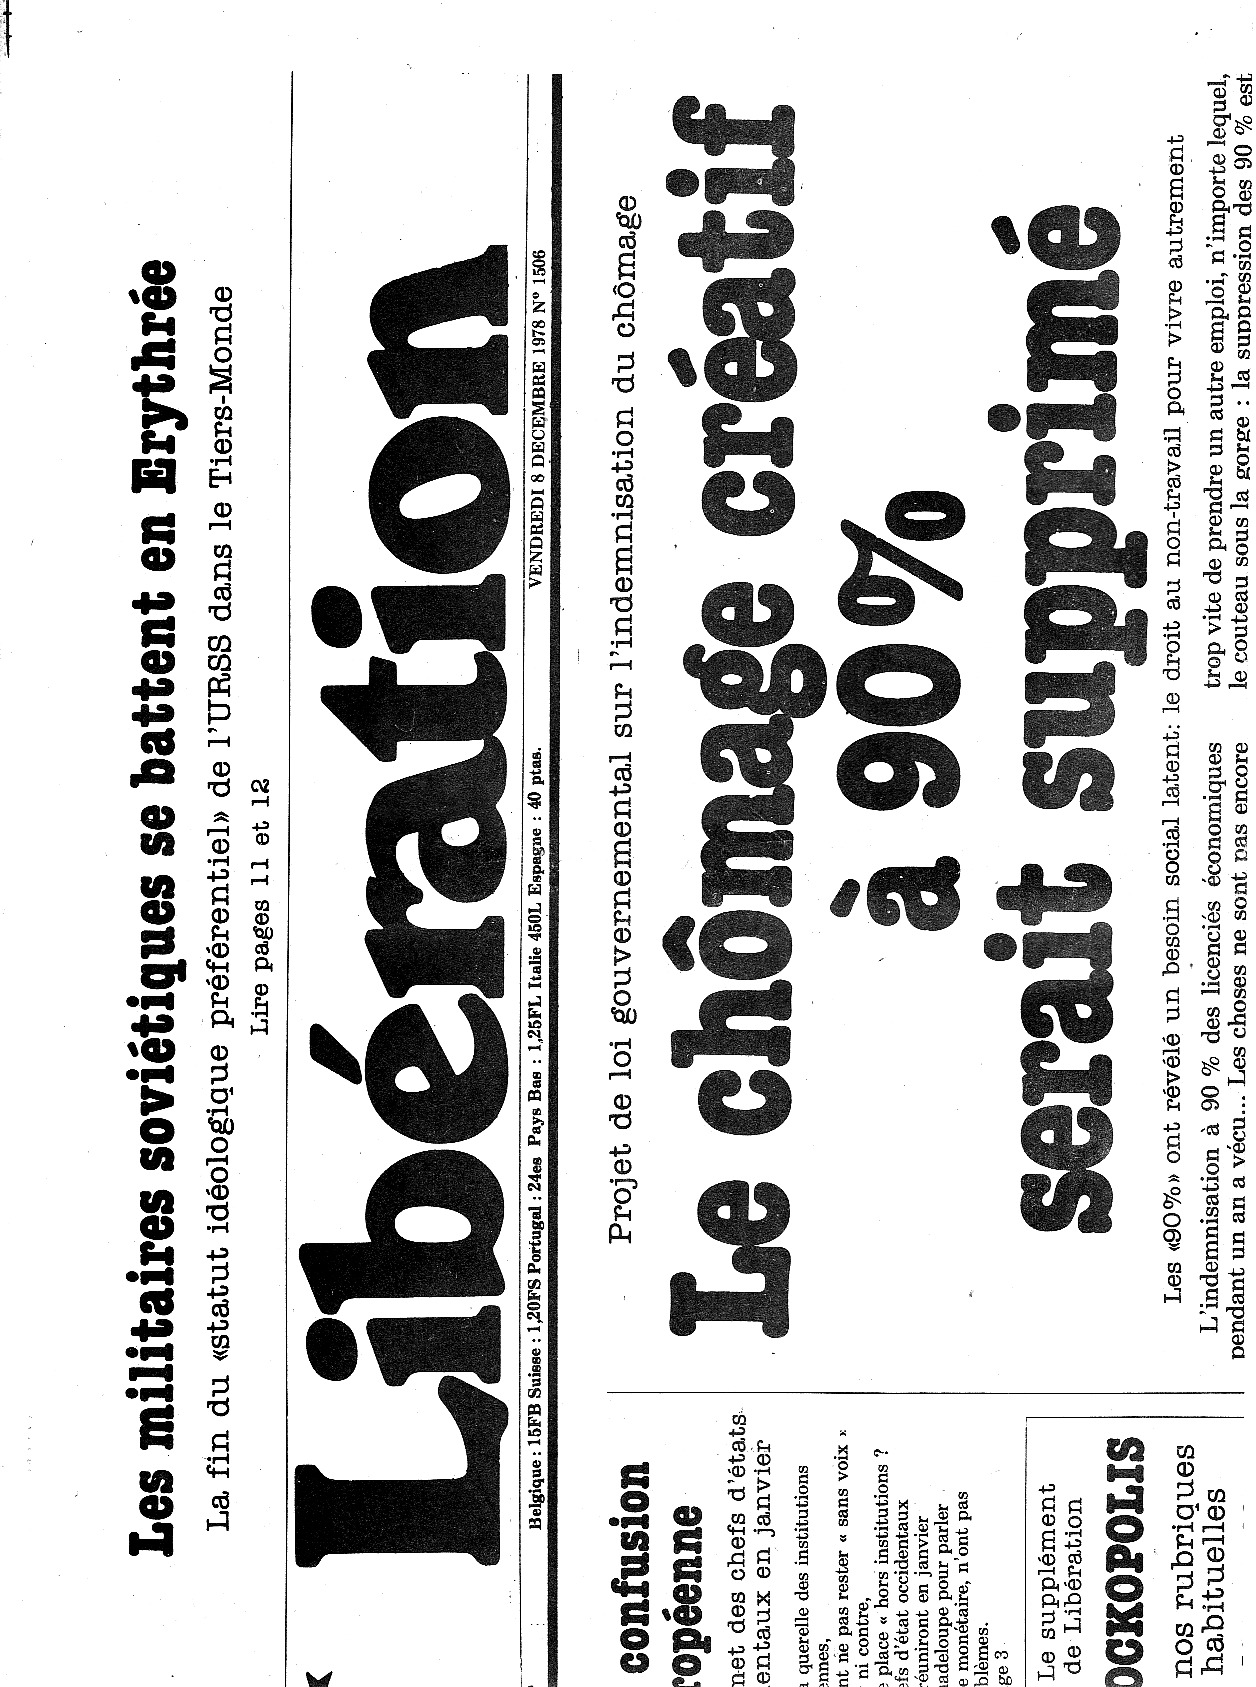 Libération du 8 décembre 1978